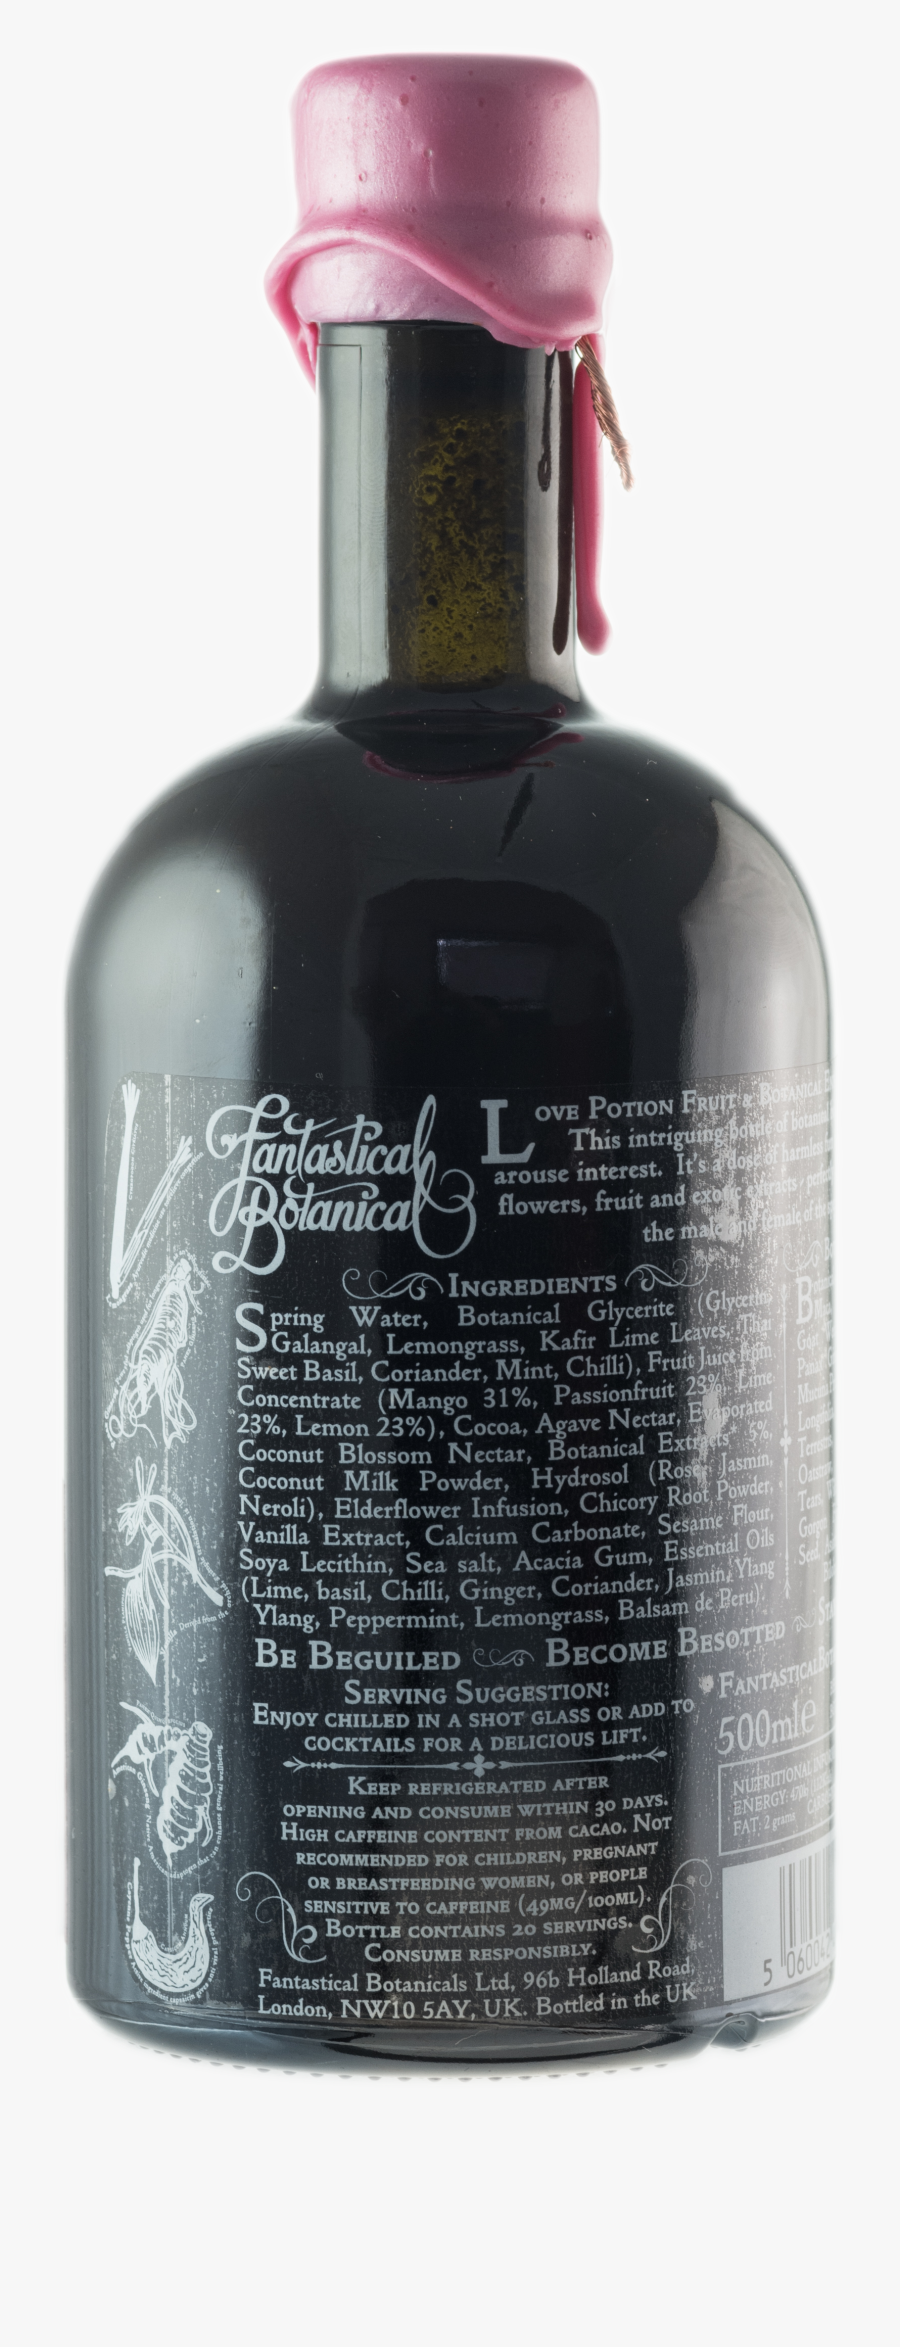 Glass Bottle, Transparent Clipart